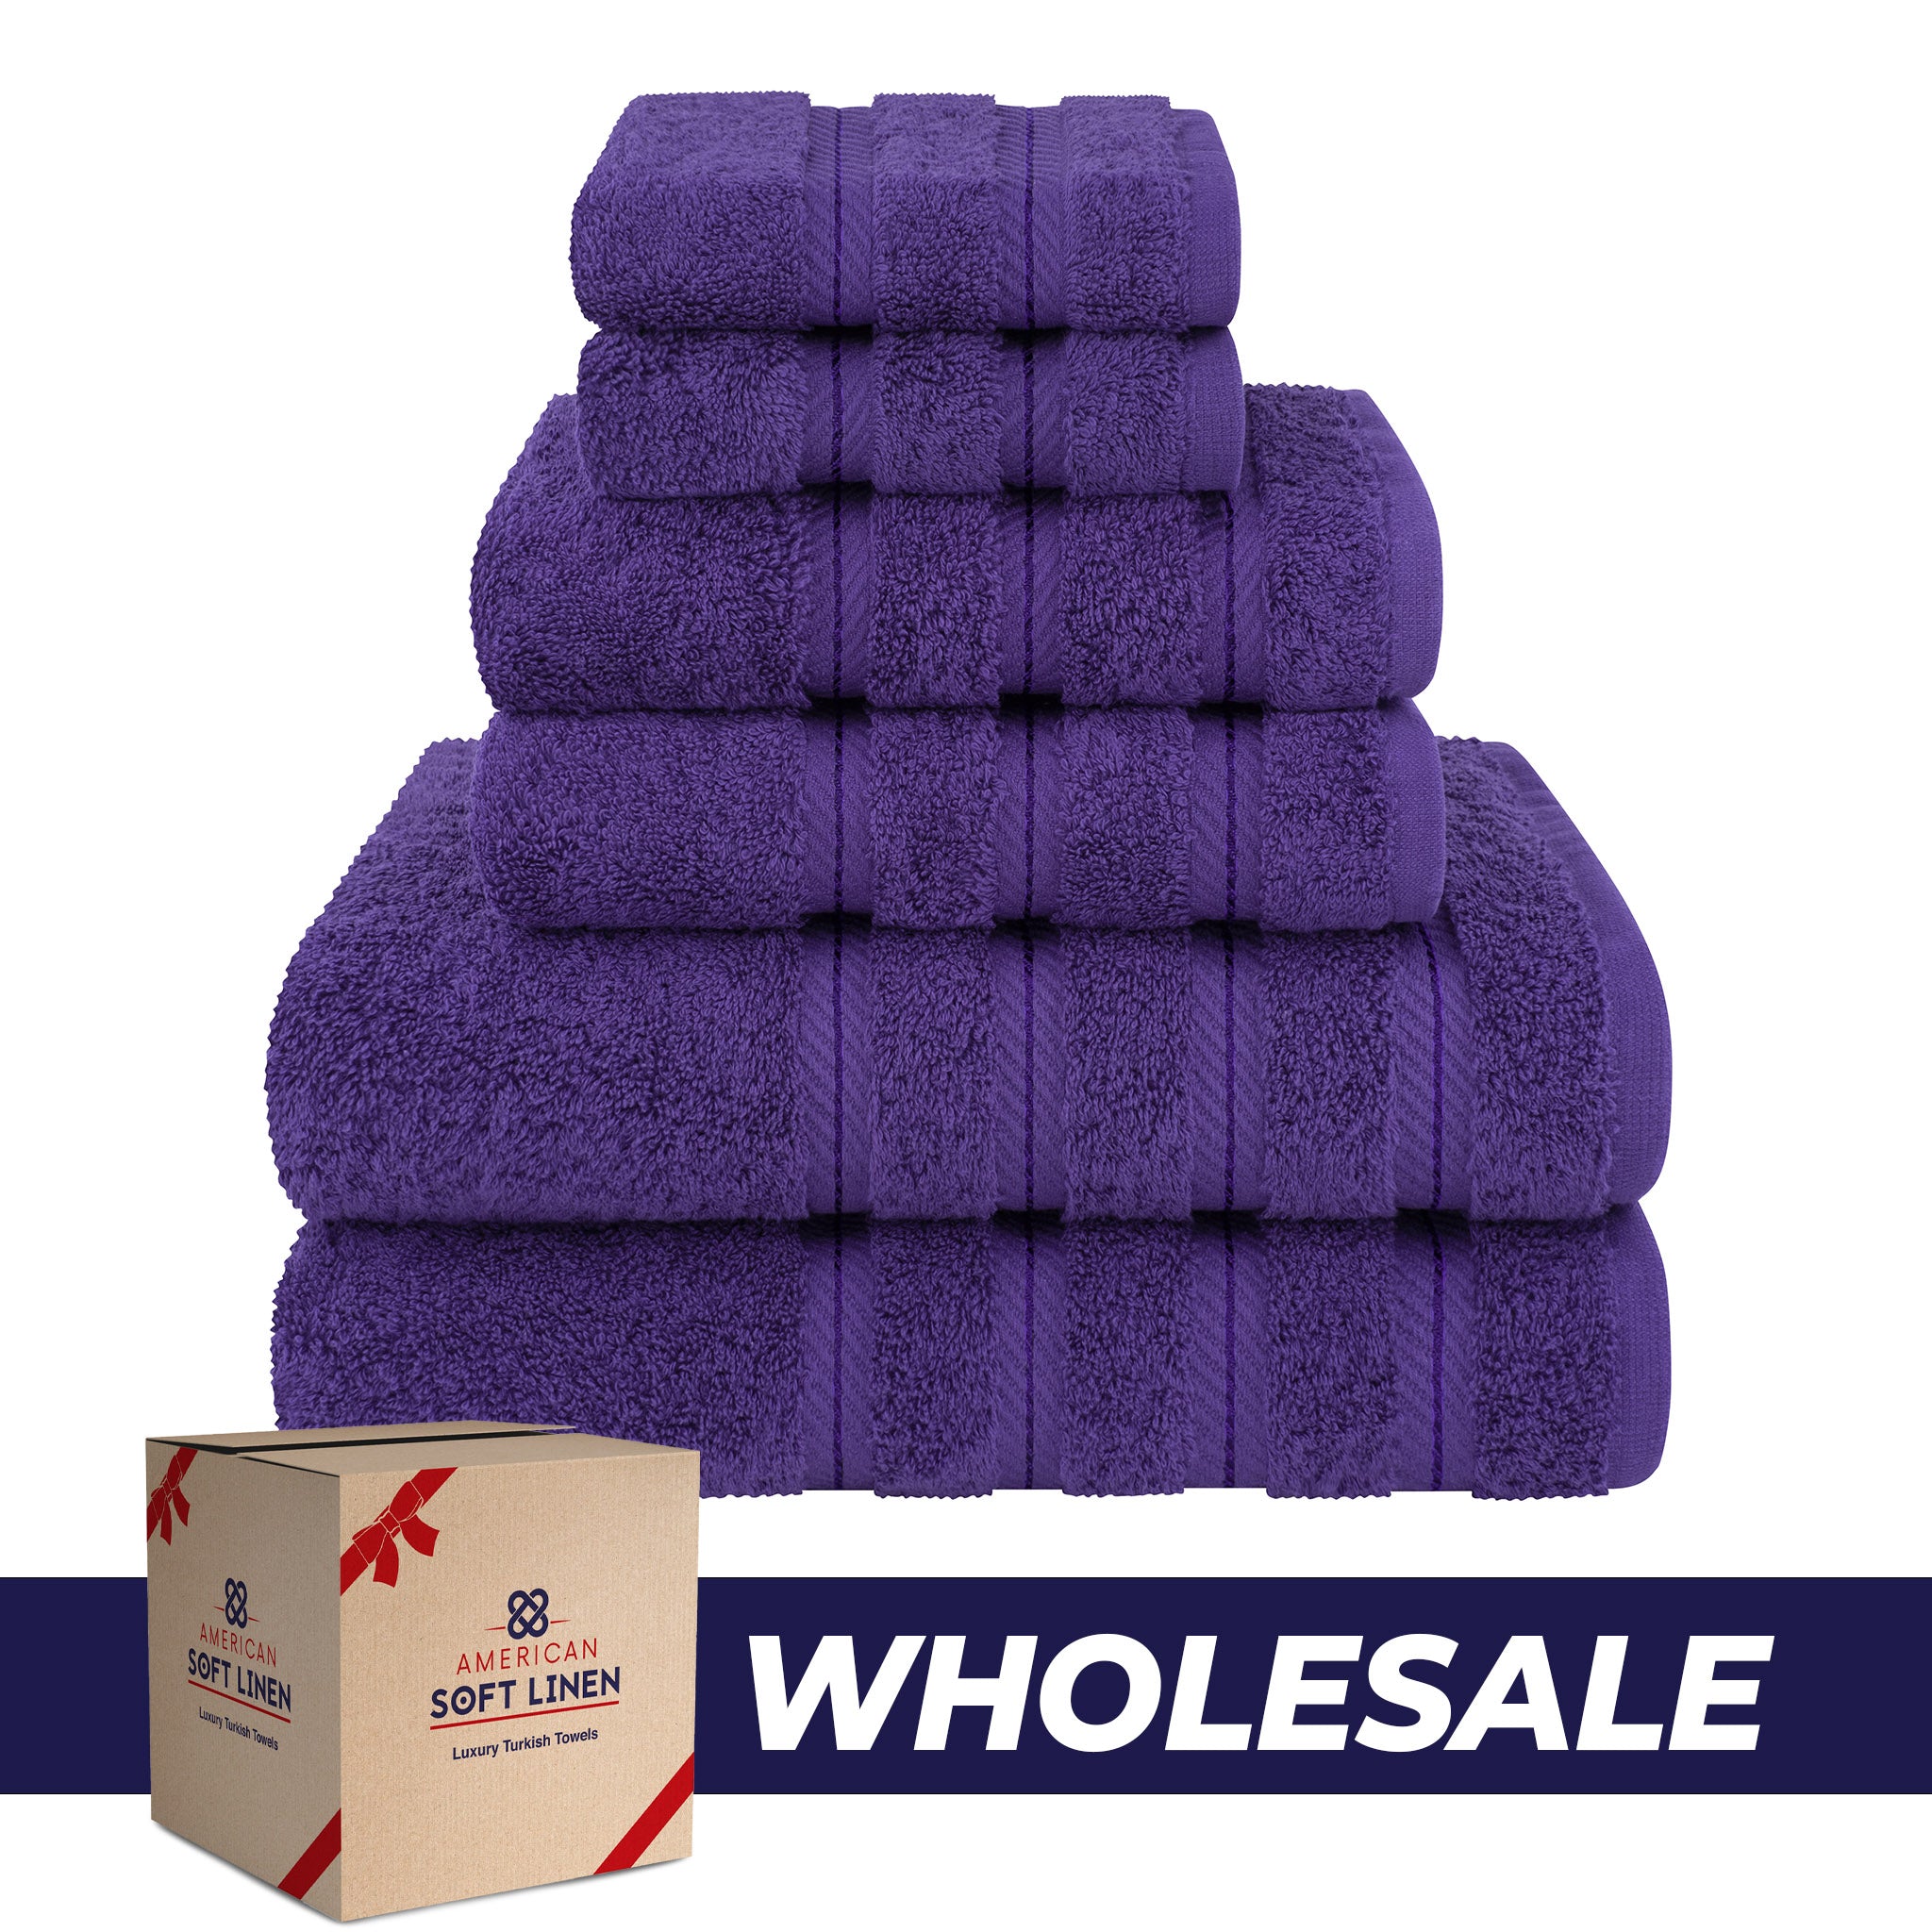 American Soft Linen 100% Turkish Cotton 6 Piece Towel Set Wholesale purple-0